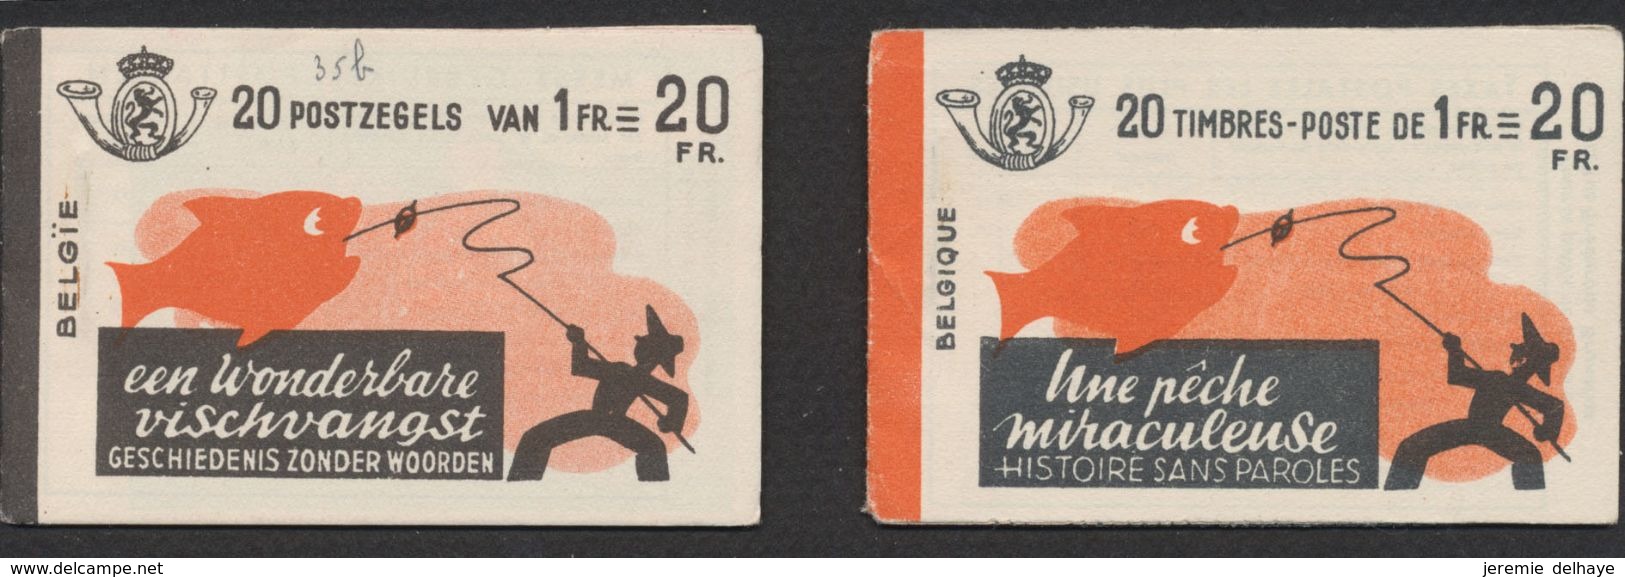 Carnet De Timbre Poste (1941) - Lot De 2 Carnets A35a ** Et A35b ** "Une Pêche Miraculeuse" (FR / NL) 20F, MNH / N°528 - 1907-1941 Alte [A]